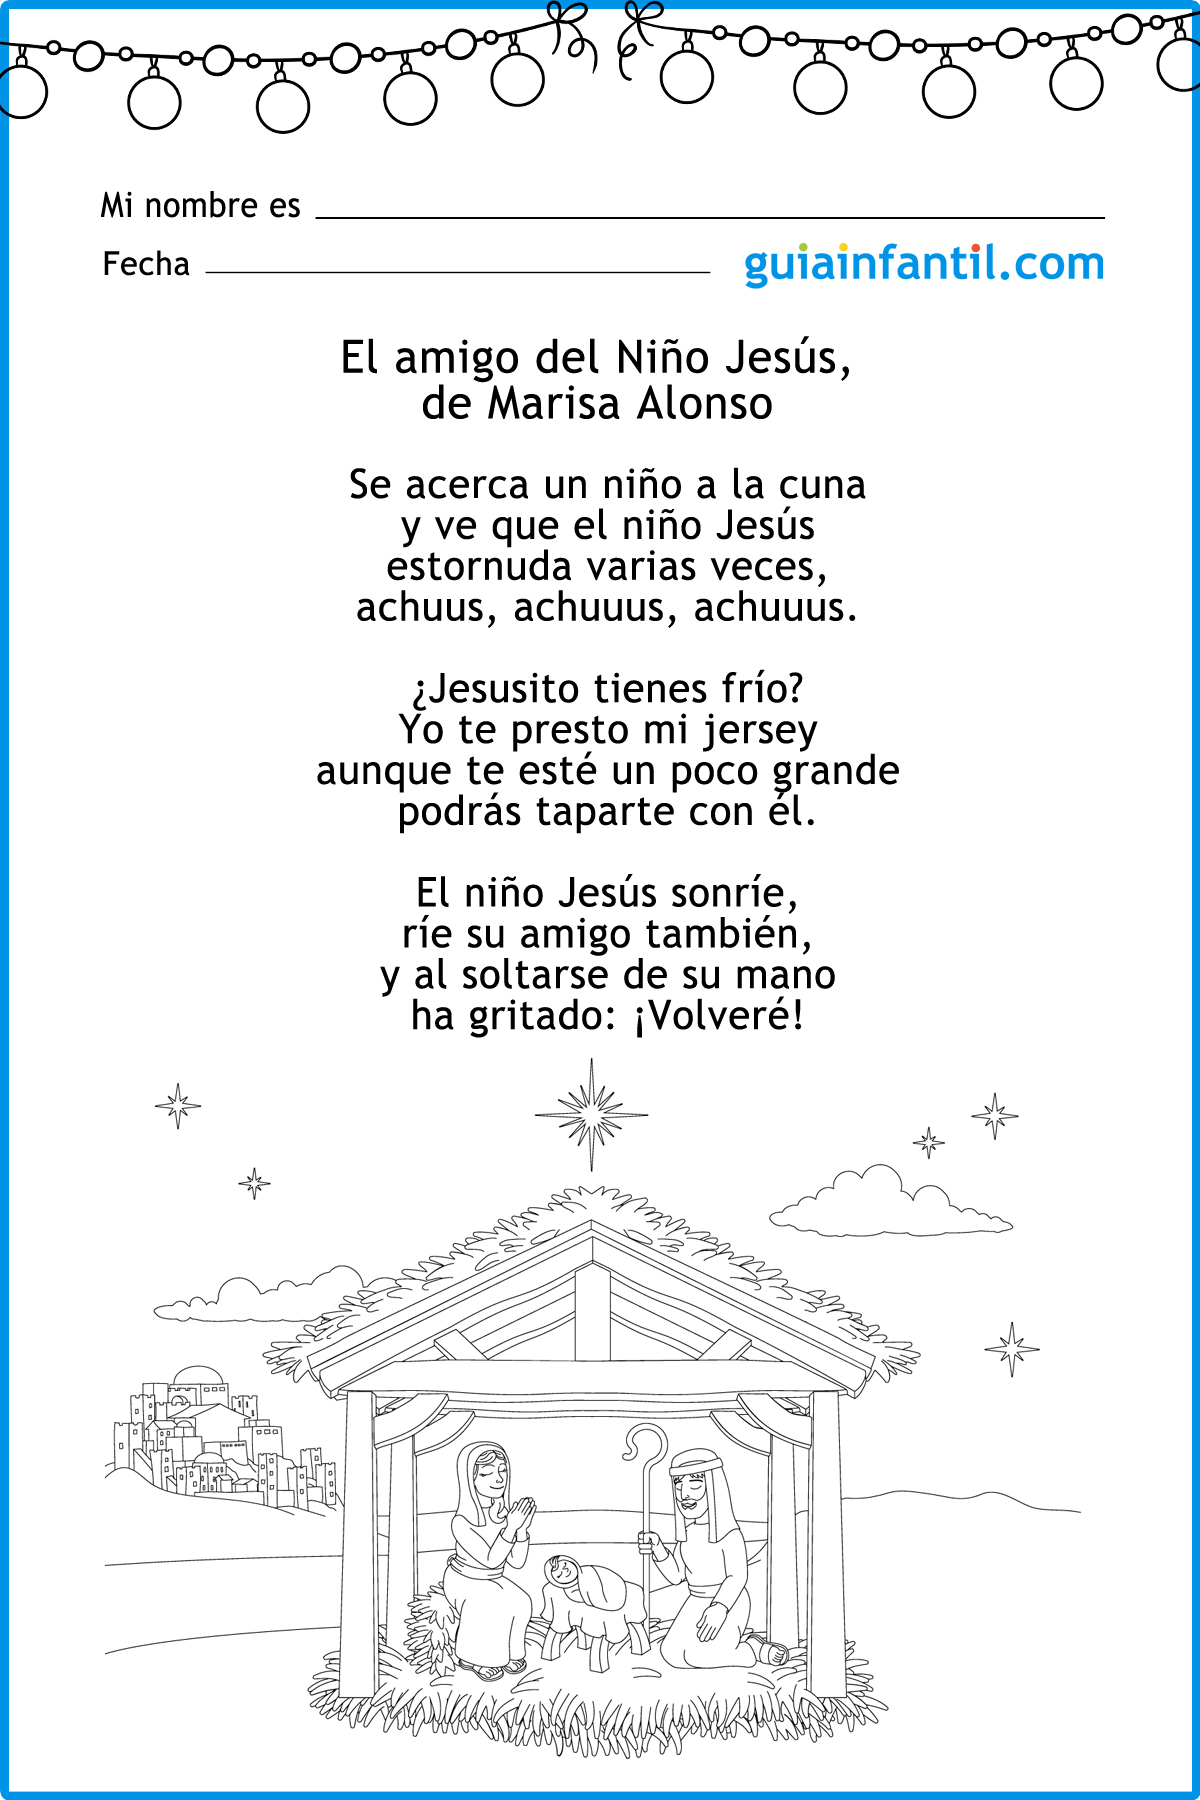 El amigo del Niño Jesús. Poema infantil de Navidad sobre la generosidad